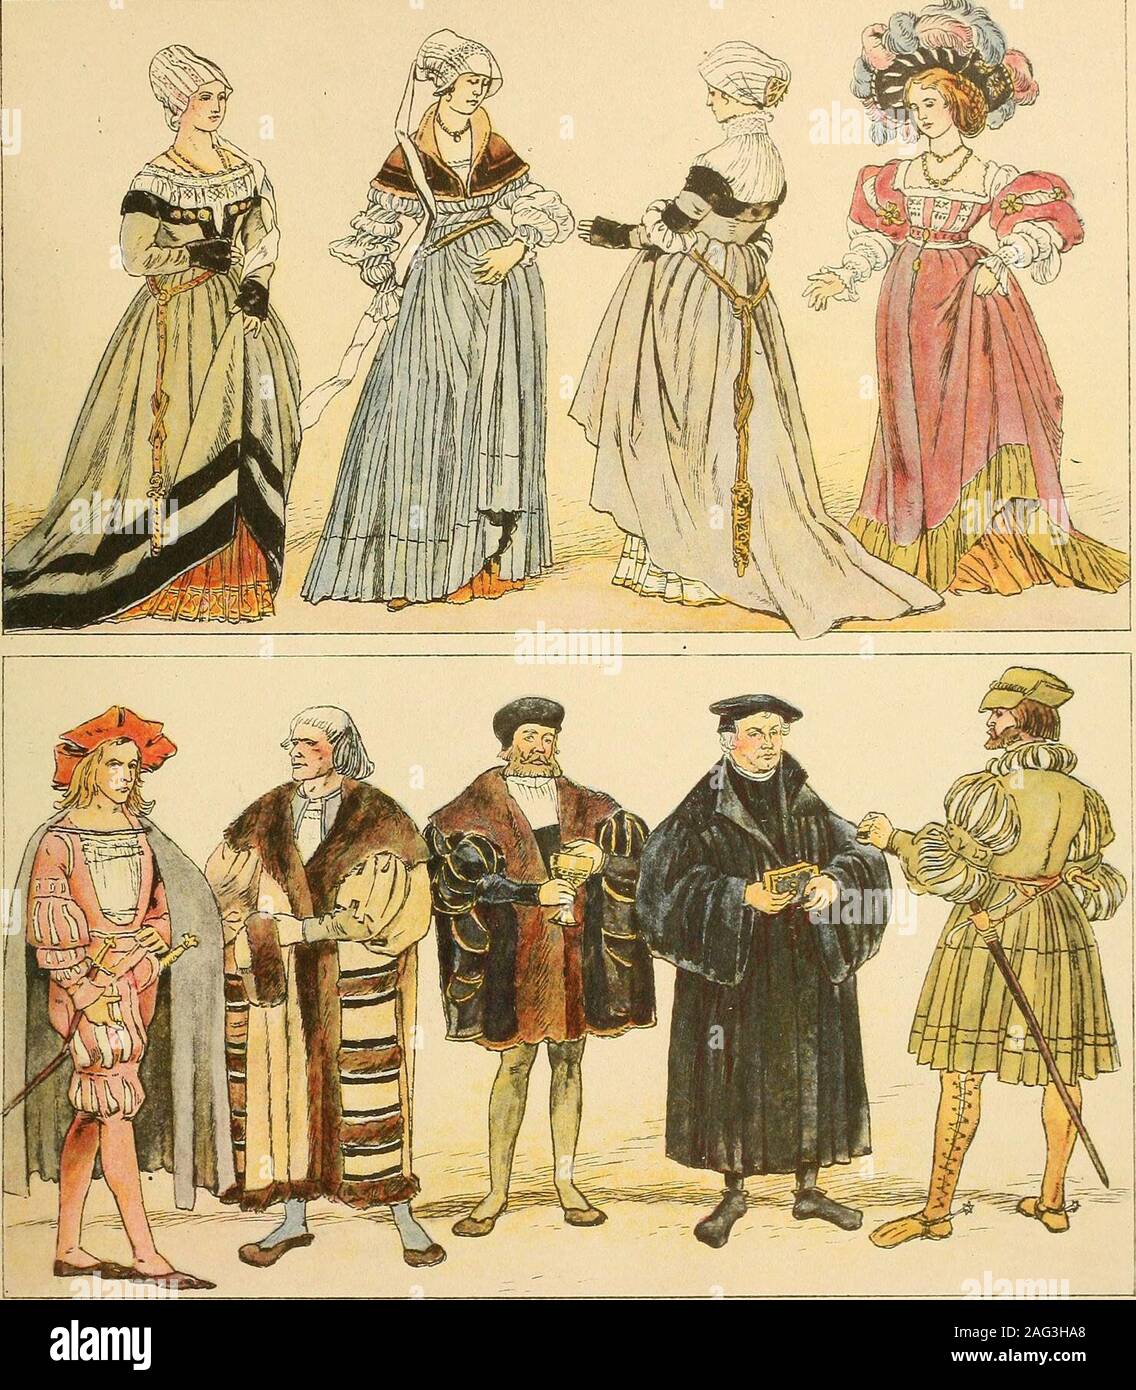 . Geschichte des Kostüms. n, den Holbein und Cranach in ihren Zeichnungen oder Bilderngelegentlich den Frauen aufsetzen, ist kostümgeschichtlich sehr verdächtig. Die Malerscheinen hier eher einer ästhetischen Phantasie nachgegeben zu haben, die der stattlichreichen Tracht ein entsprechendes Gegengewicht auf dem Kopfe gab. In der Wirk-lichkeit überließ die Dame den großen federgeschmückten Hut, den man als eine starkeExtravaganz des Baretts empfand, noch dem Landsknechtsliebchen, das die Prunkstückeseines Ernährers mhbenutzte. Schmuck wurde von beiden Geschlechtern sehrreichlich getragen, z. B. Stock Photo